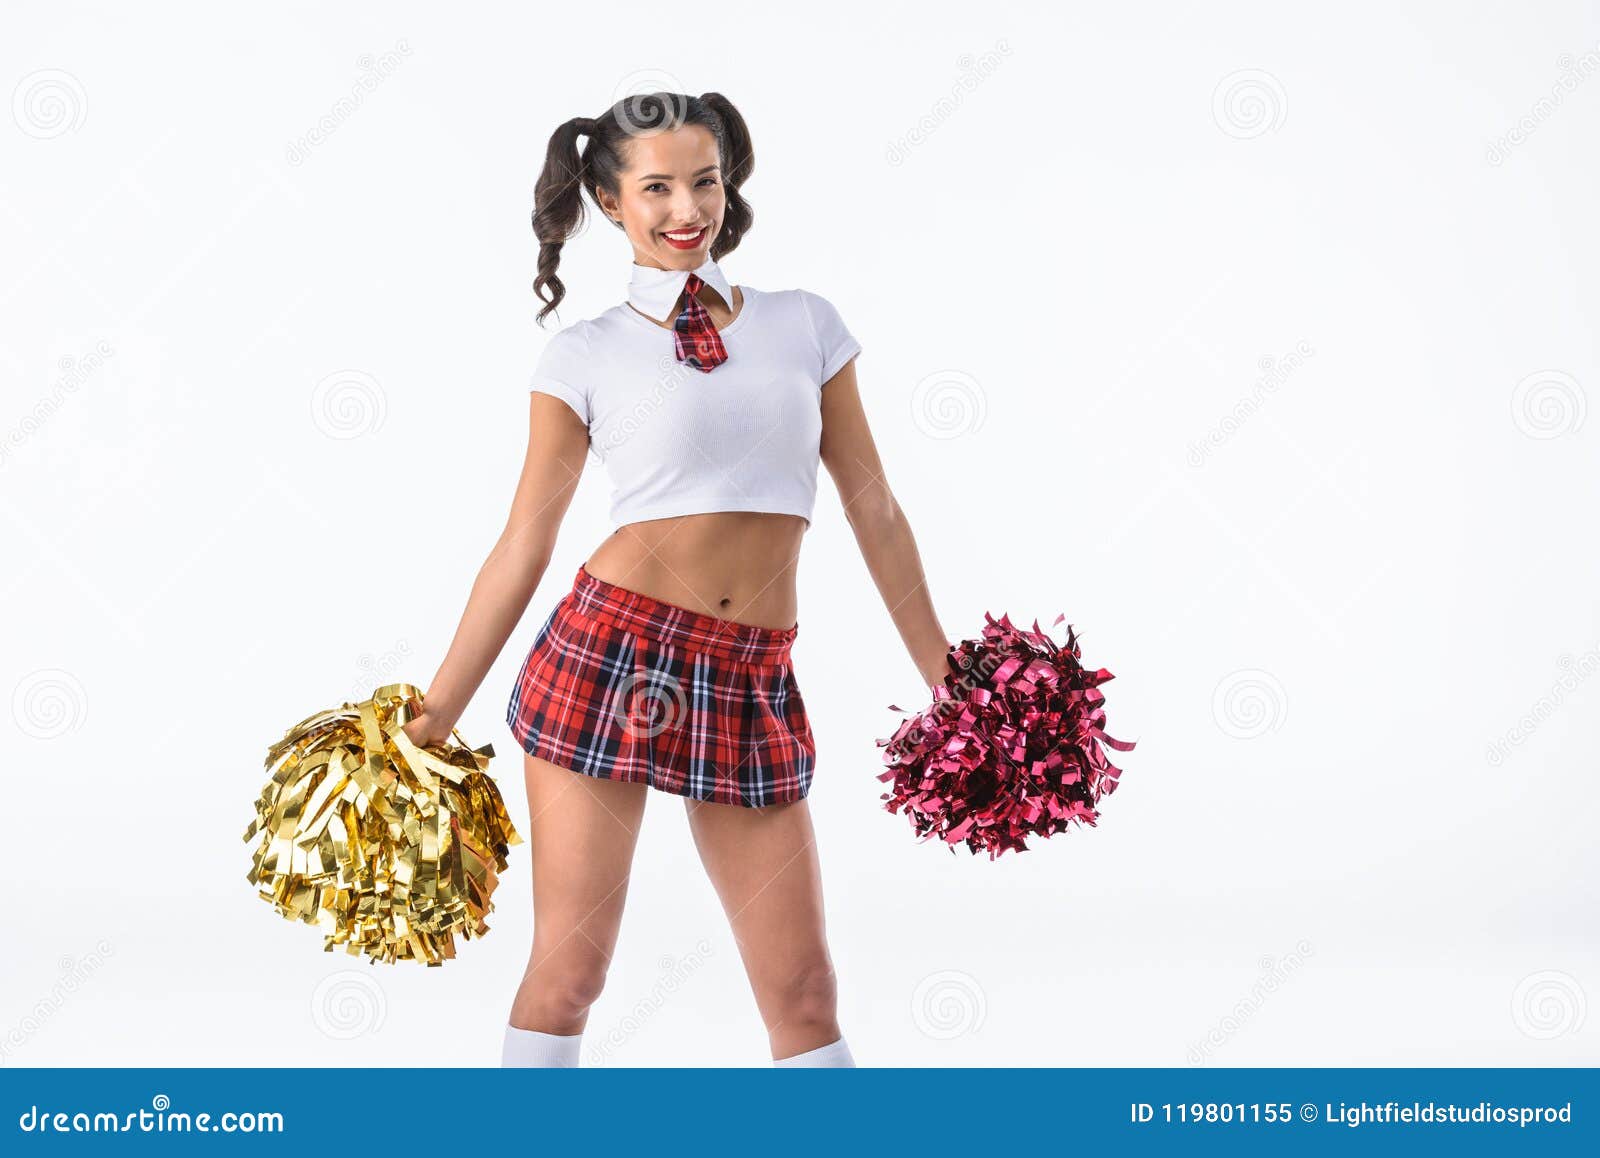 Boekenclub Online Dating Schoolgirl Cheerleaders